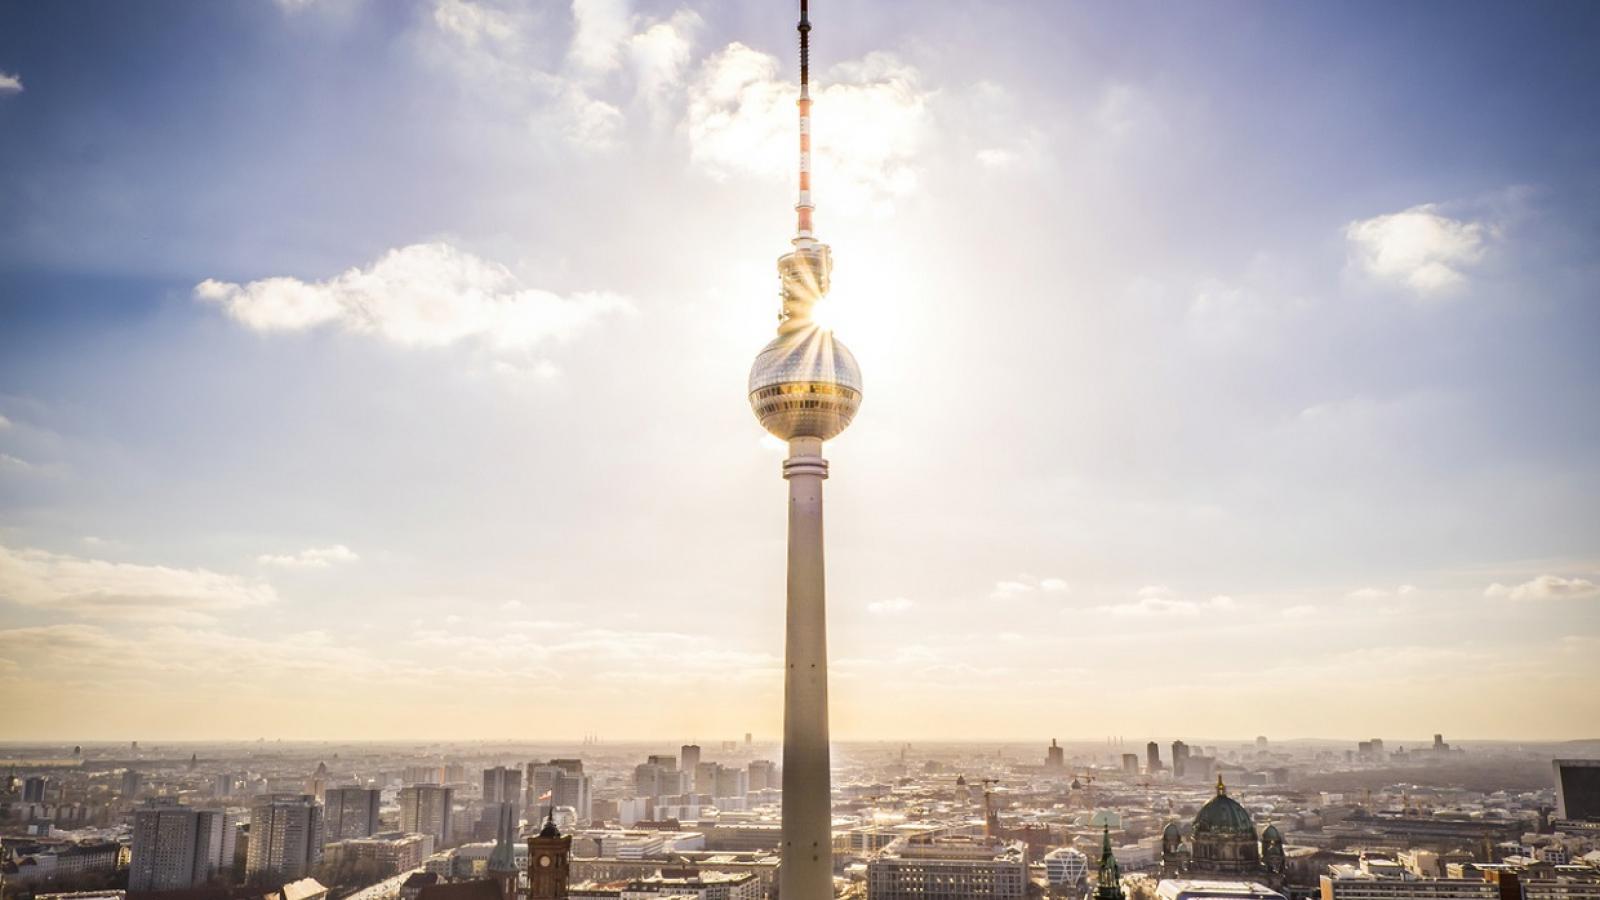 Berliner Fernsehturm Berlin CityTourCard